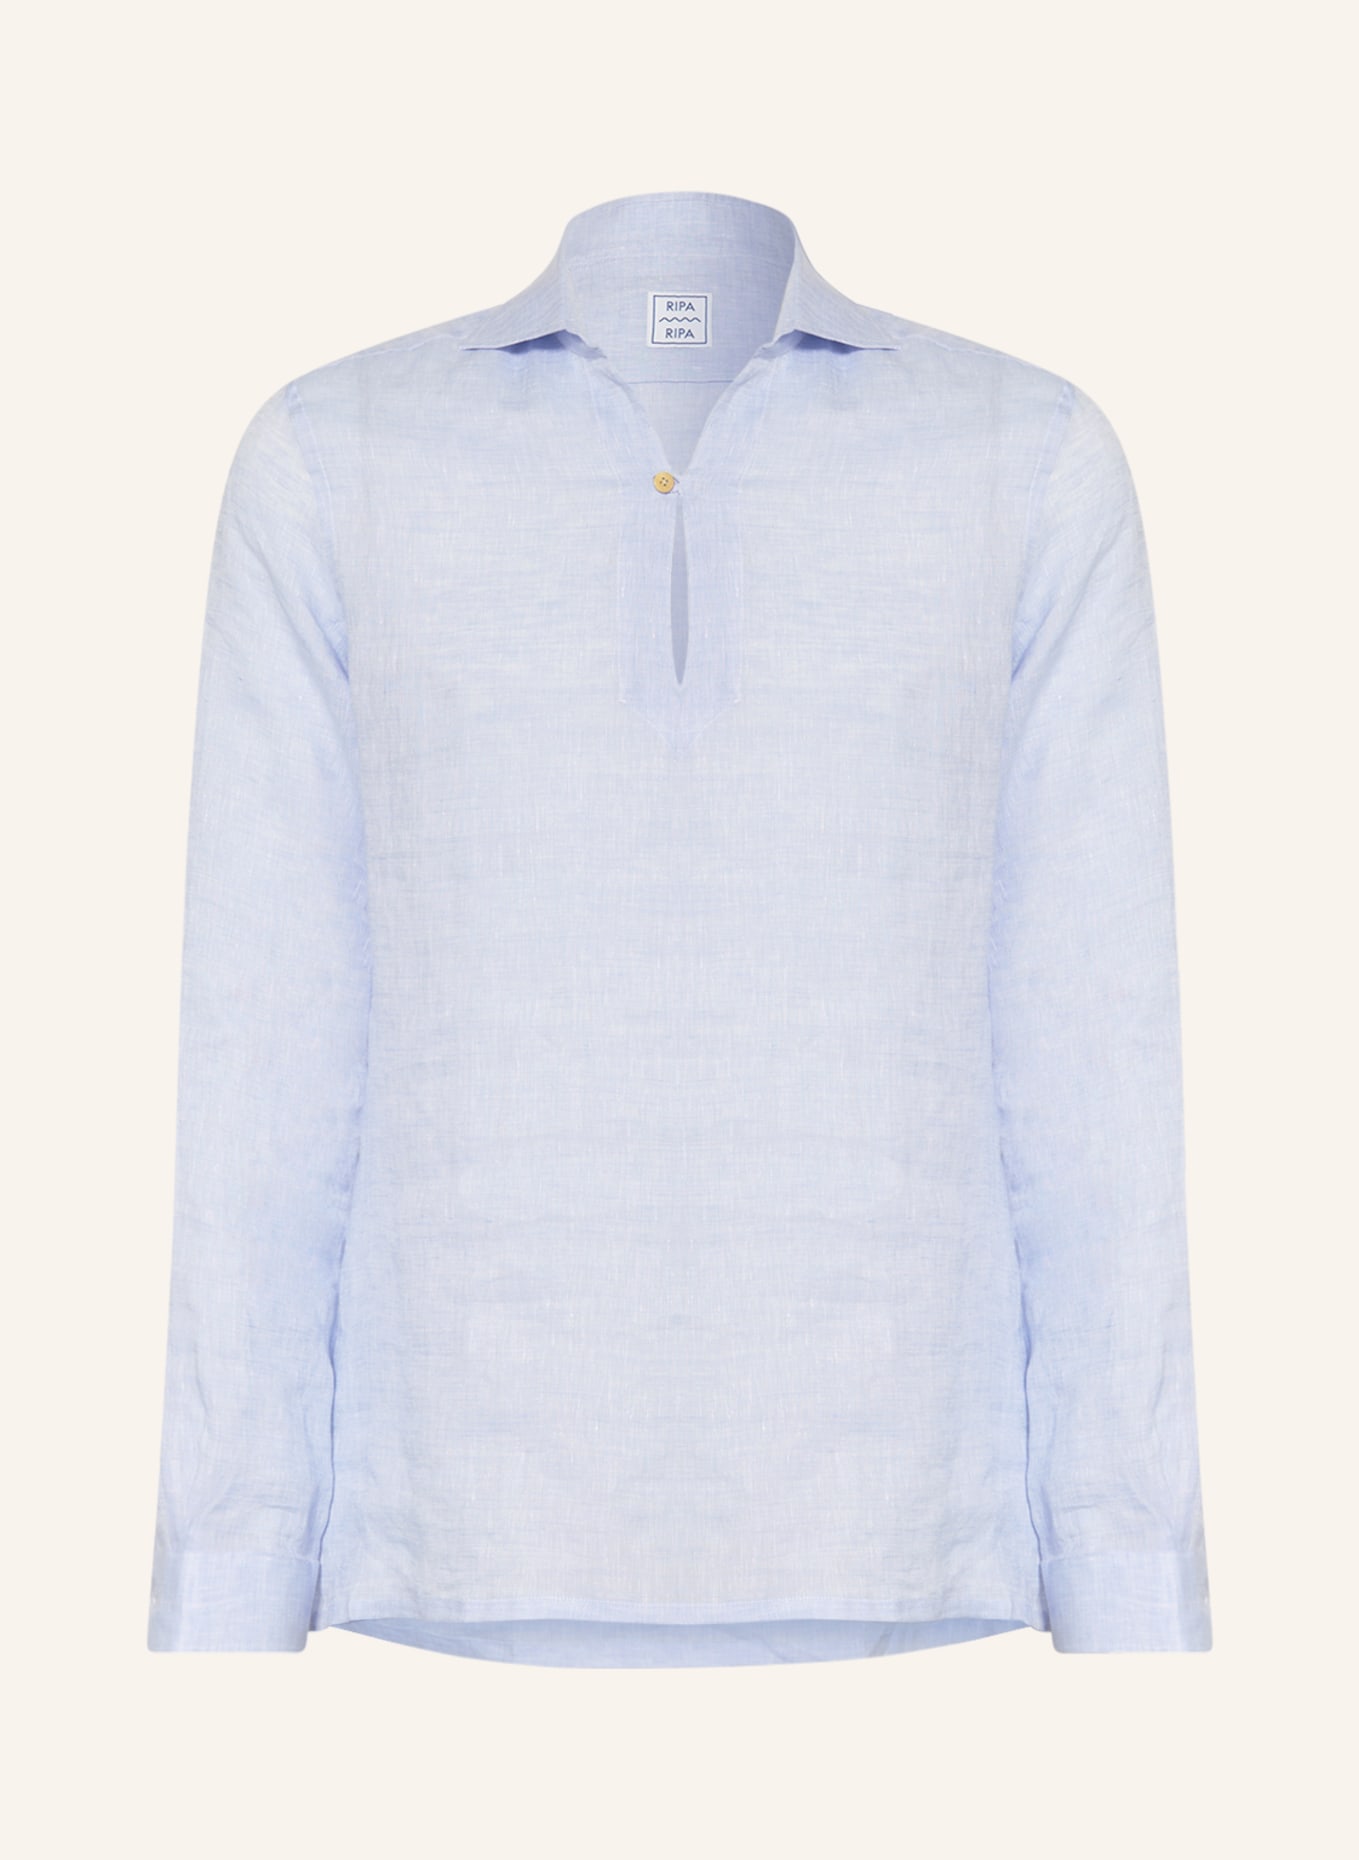 RIPA RIPA Linen shirt regular fit, Color: LIGHT BLUE (Image 1)